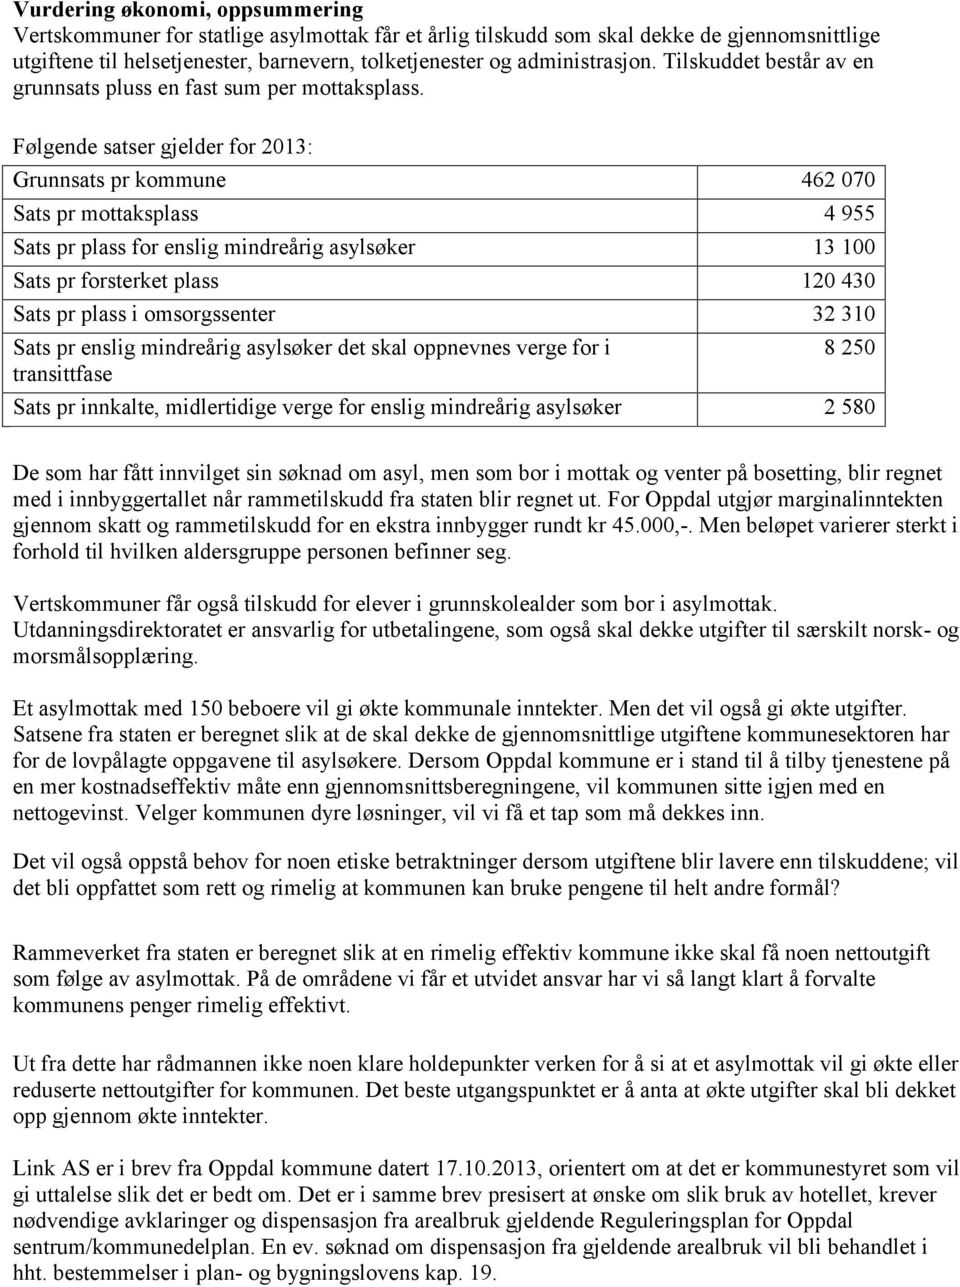 Følgende satser gjelder for 2013: Grunnsats pr kommune 462 070 Sats pr mottaksplass 4 955 Sats pr plass for enslig mindreårig asylsøker 13 100 Sats pr forsterket plass 120 430 Sats pr plass i